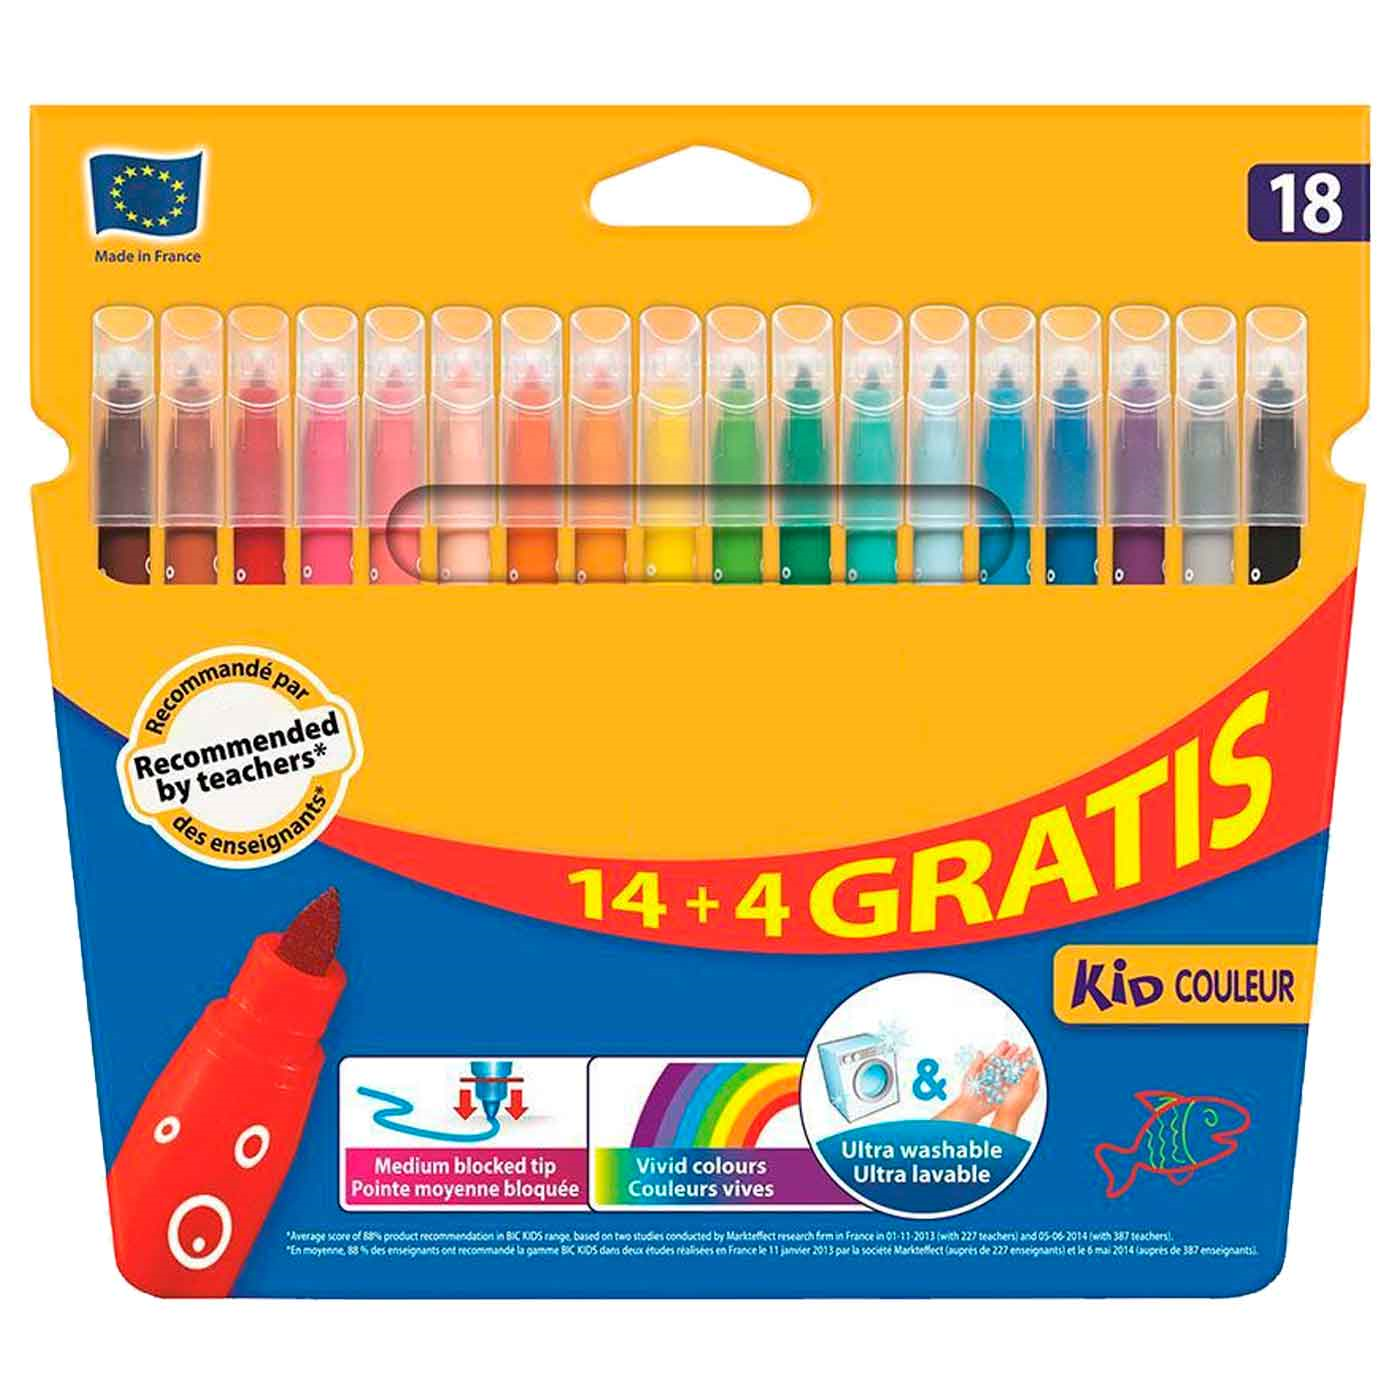 Tradineur - Caja de 24 ceras de colores para niños, material escolar,  colores vivos surtidos, ideal para colorear, dibujar